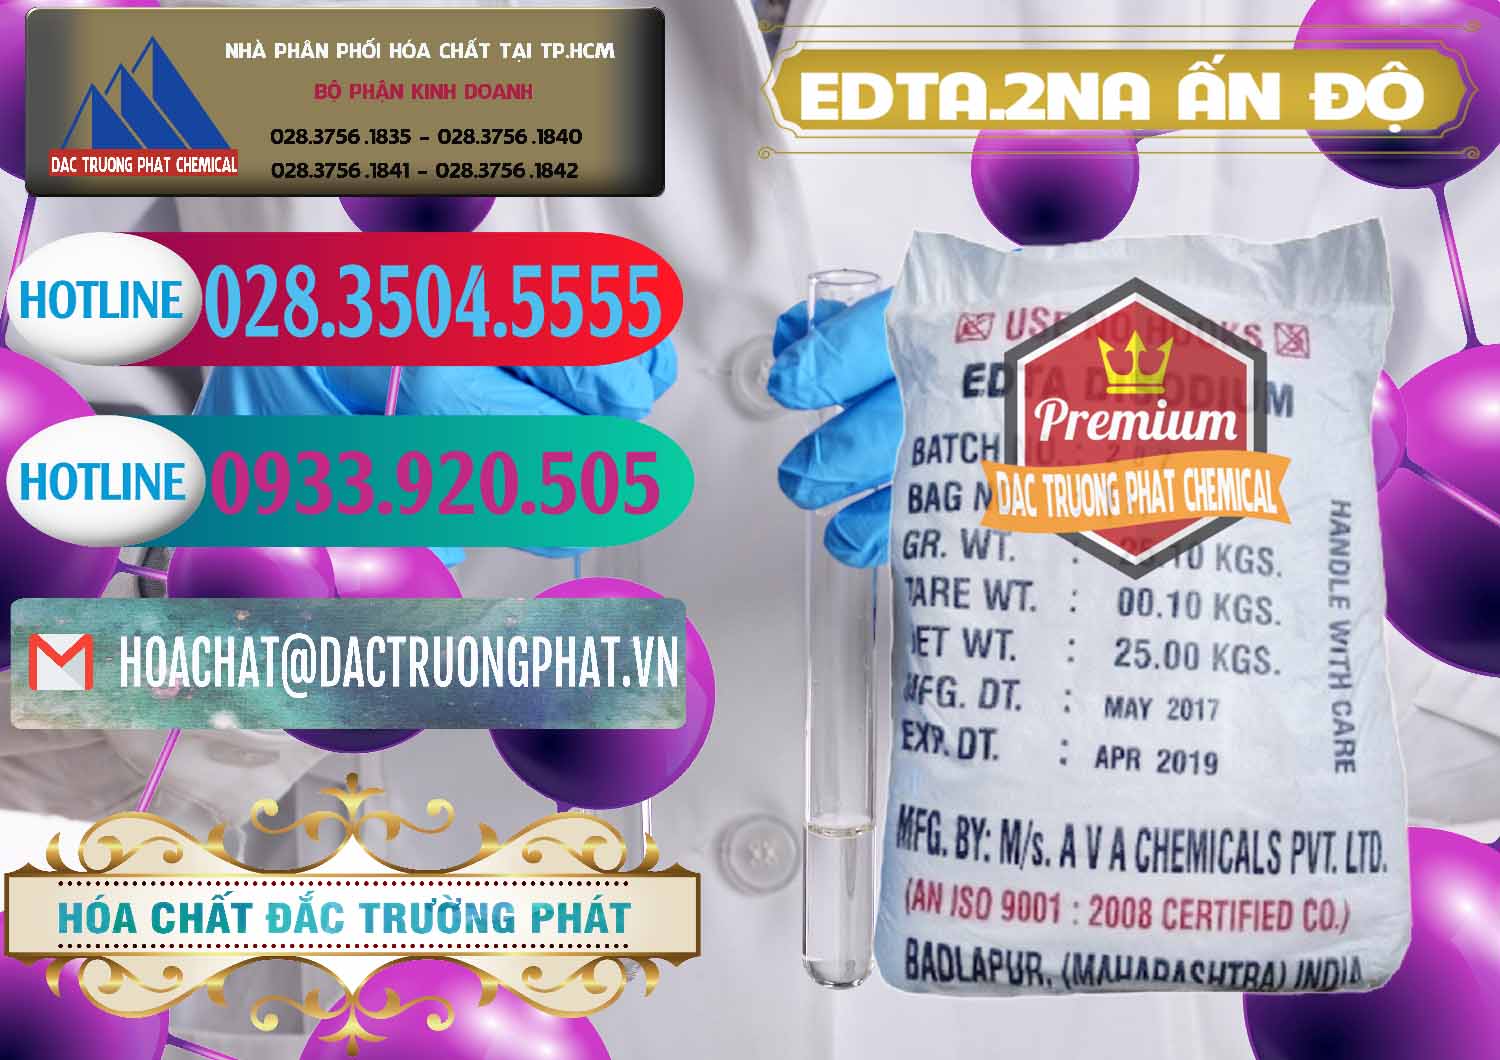 Cty chuyên cung ứng _ bán EDTA.2NA - Ethylendiamin Tetraacetic Ấn Độ India - 0416 - Công ty chuyên cung cấp _ nhập khẩu hóa chất tại TP.HCM - truongphat.vn